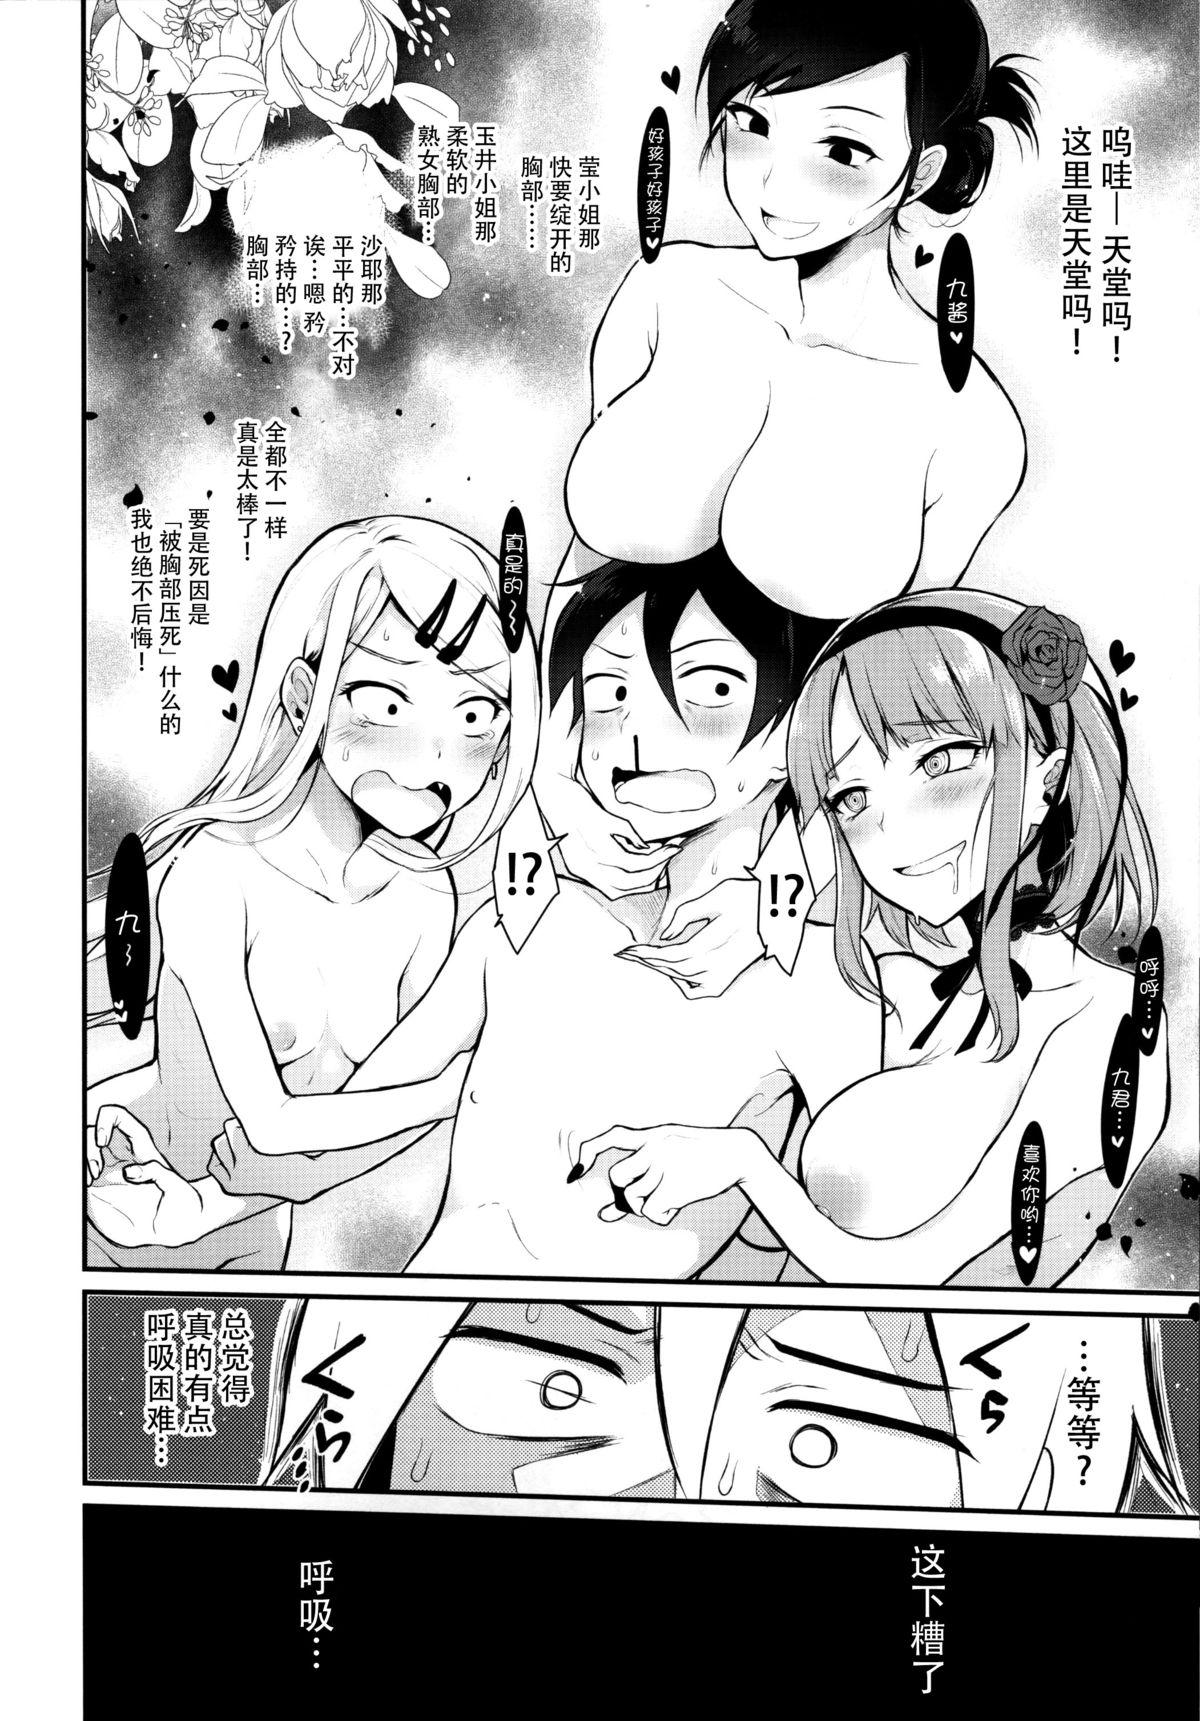 Ex Gf Otona no Dagashi 3 - Dagashi kashi Small Tits - Page 7